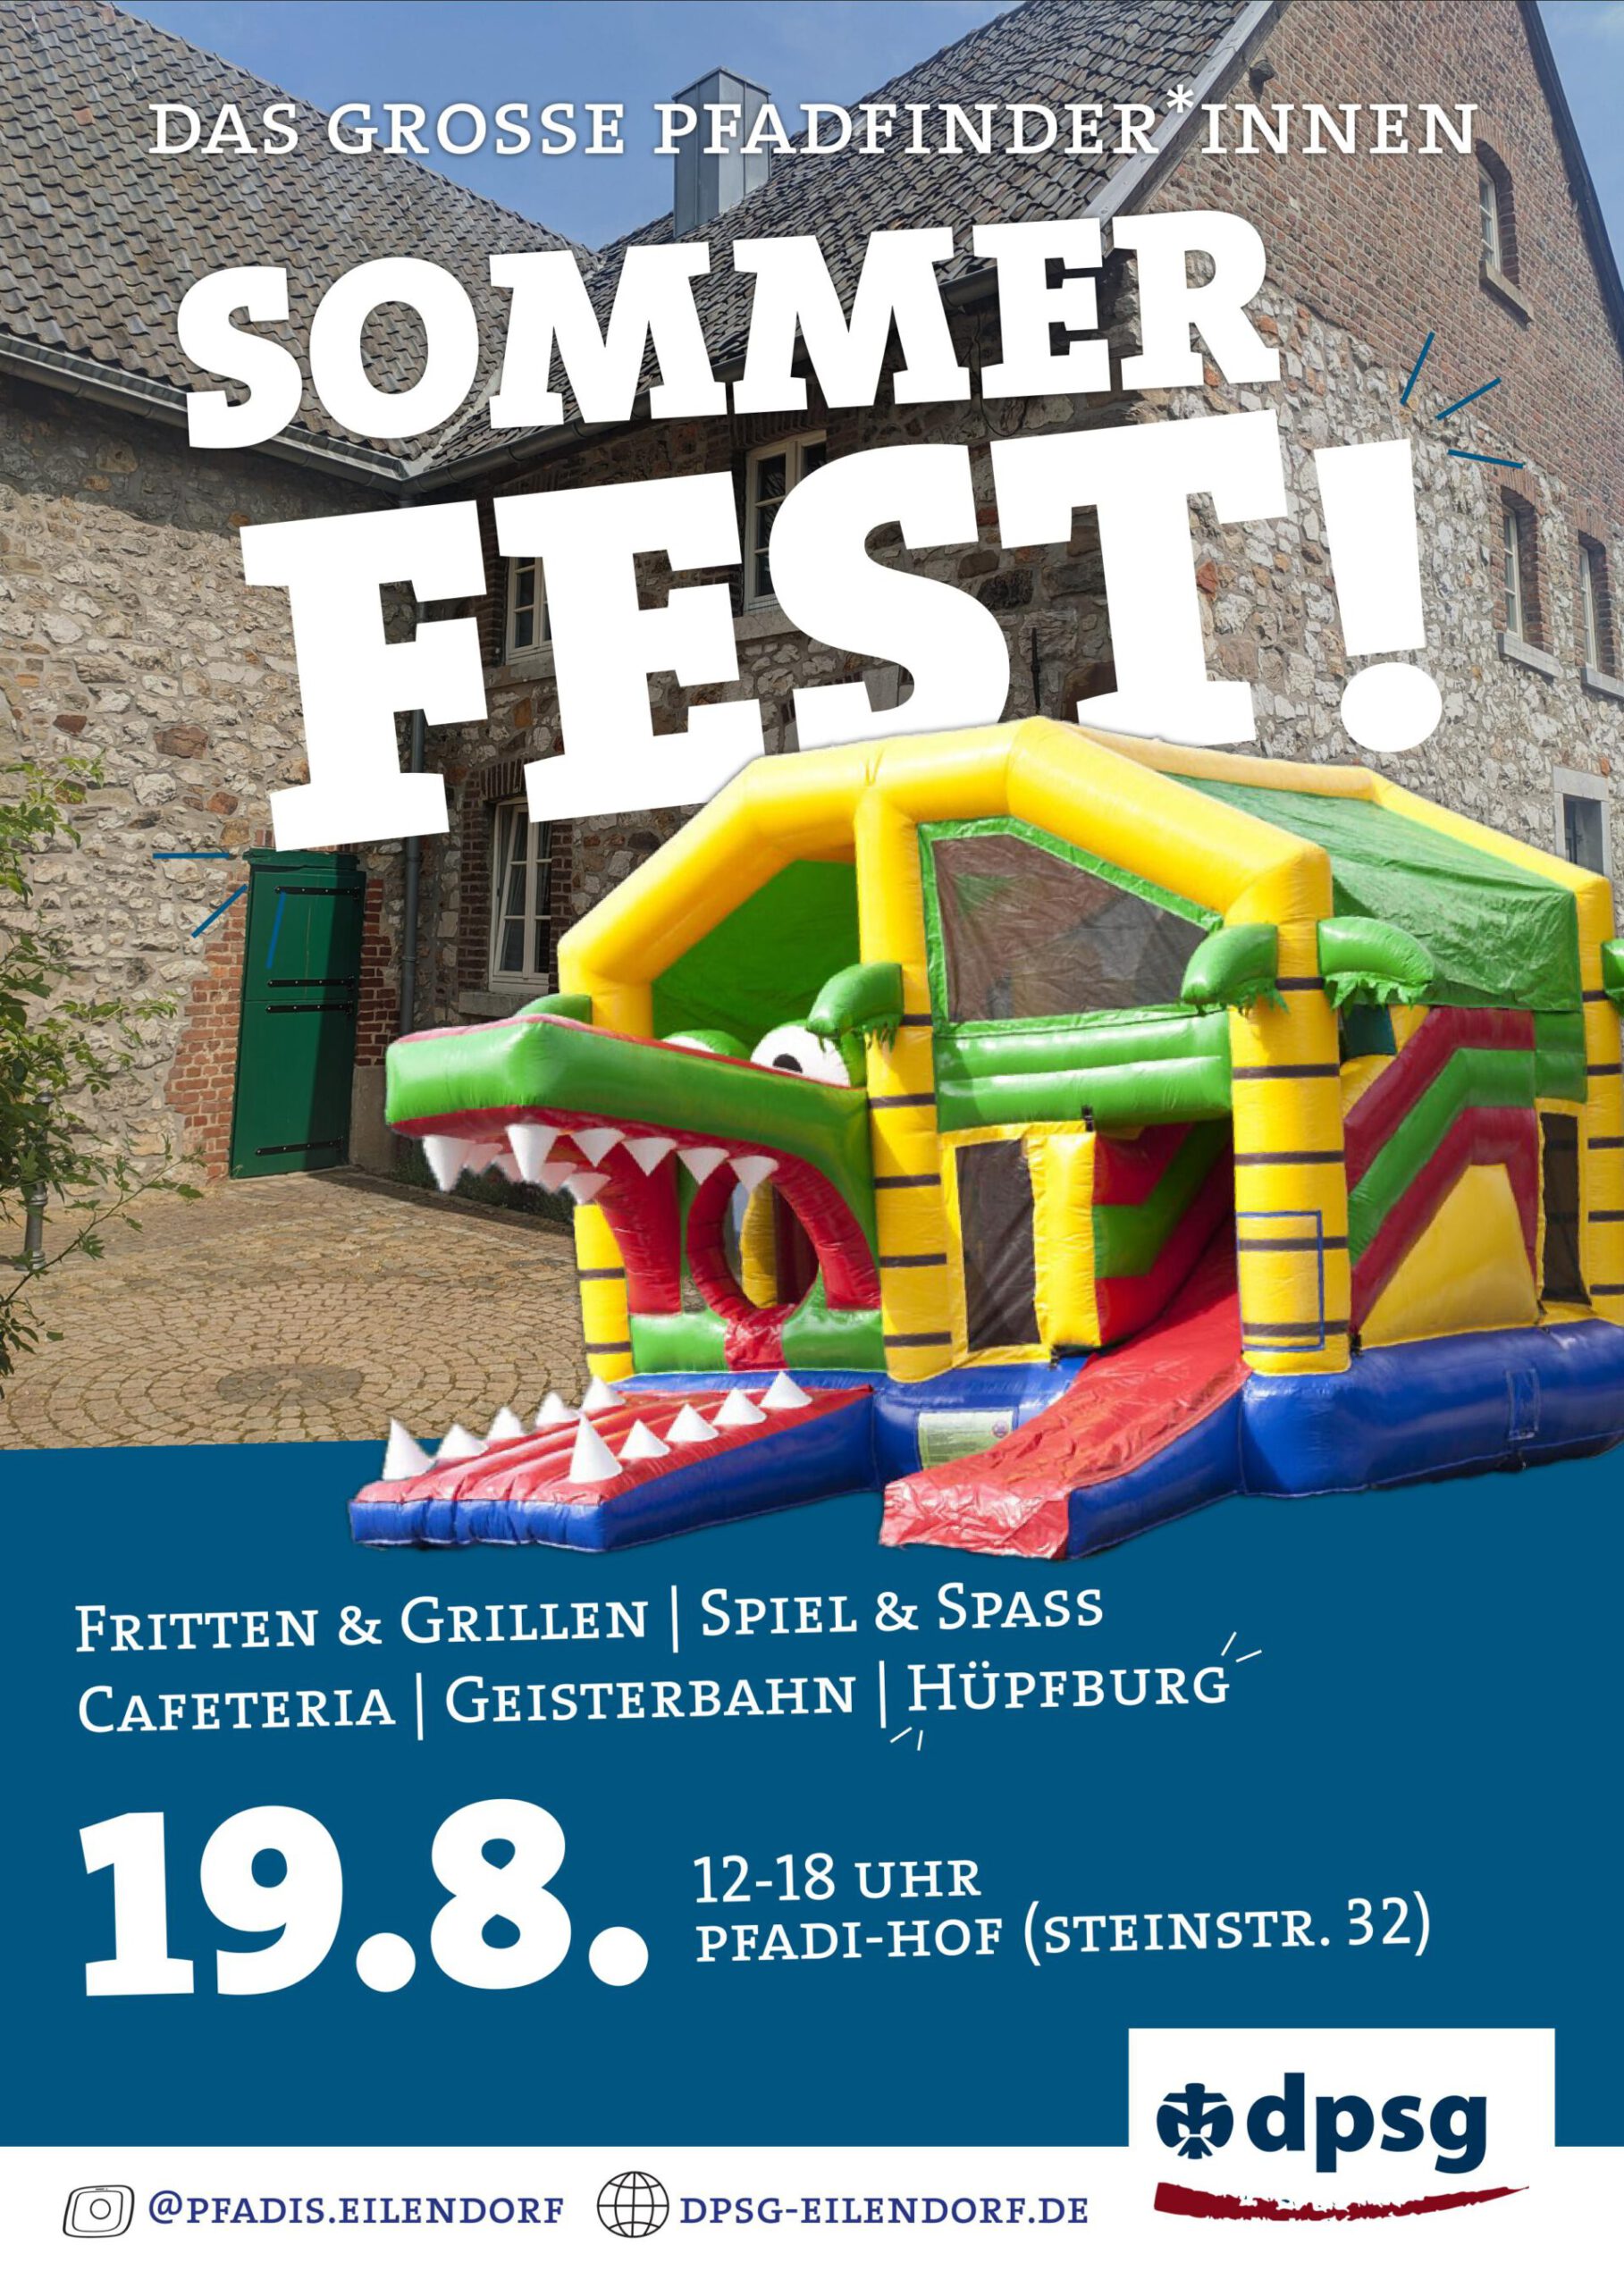 Das große Pfadfinder*innen Sommerfest am 19.08.! Es gibt Fritten, Gegrilltes, Spiel & Spaß, eine Cafeteria, eine Geisterbahn und eine Hüpfburg! Das Fest findet von 12-18 Uhr in der Steinstraße 32 statt.